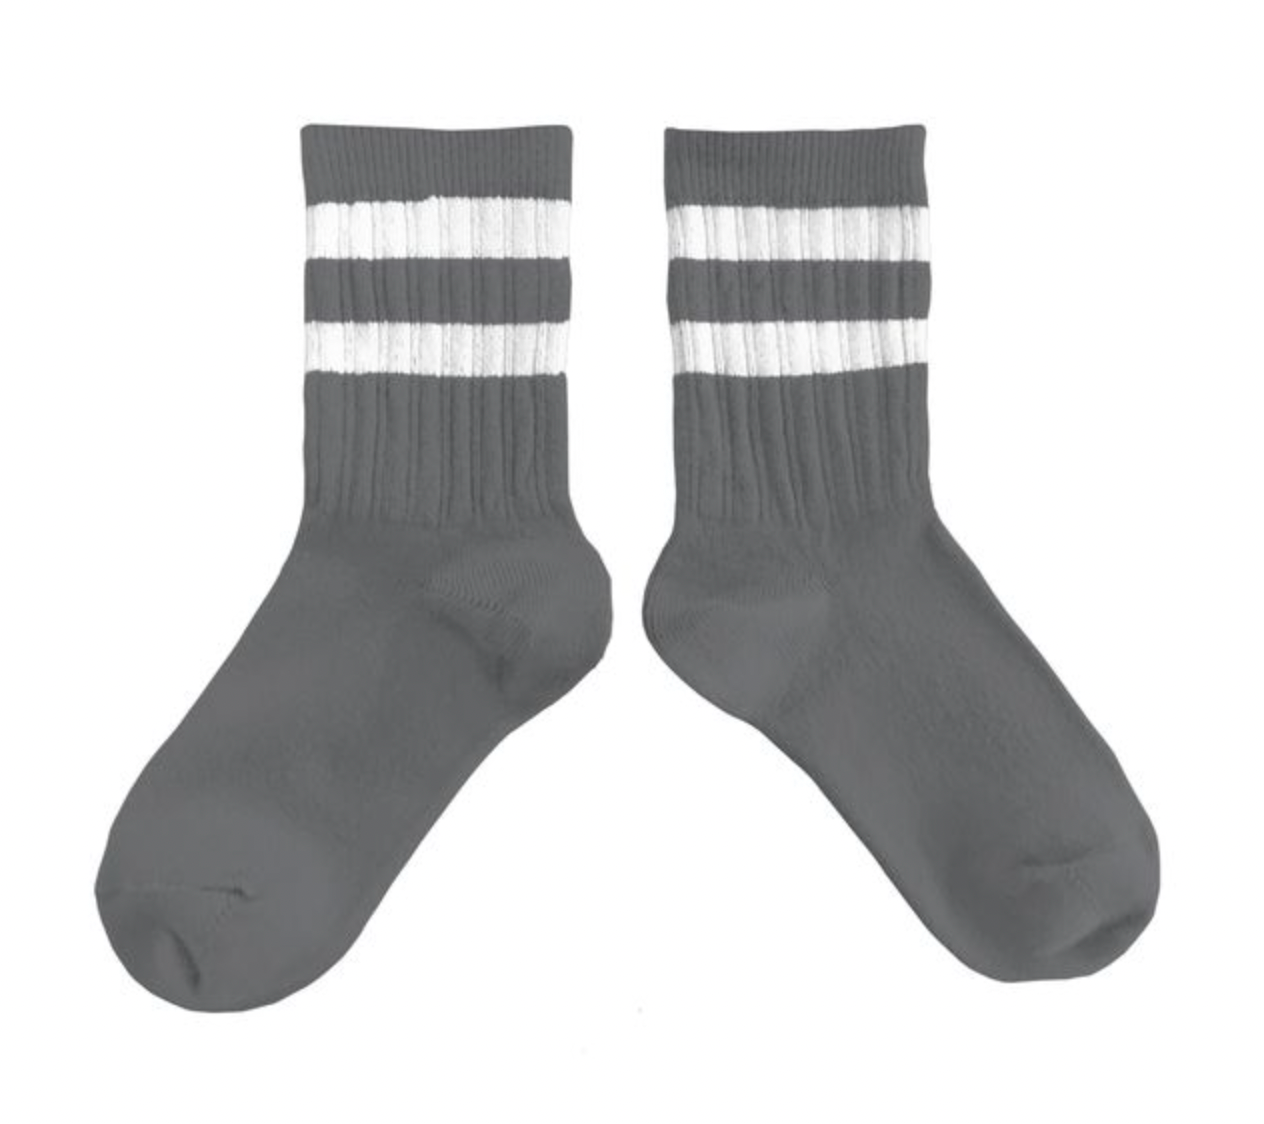 Socken 'Nico' in verschiedenen Farben